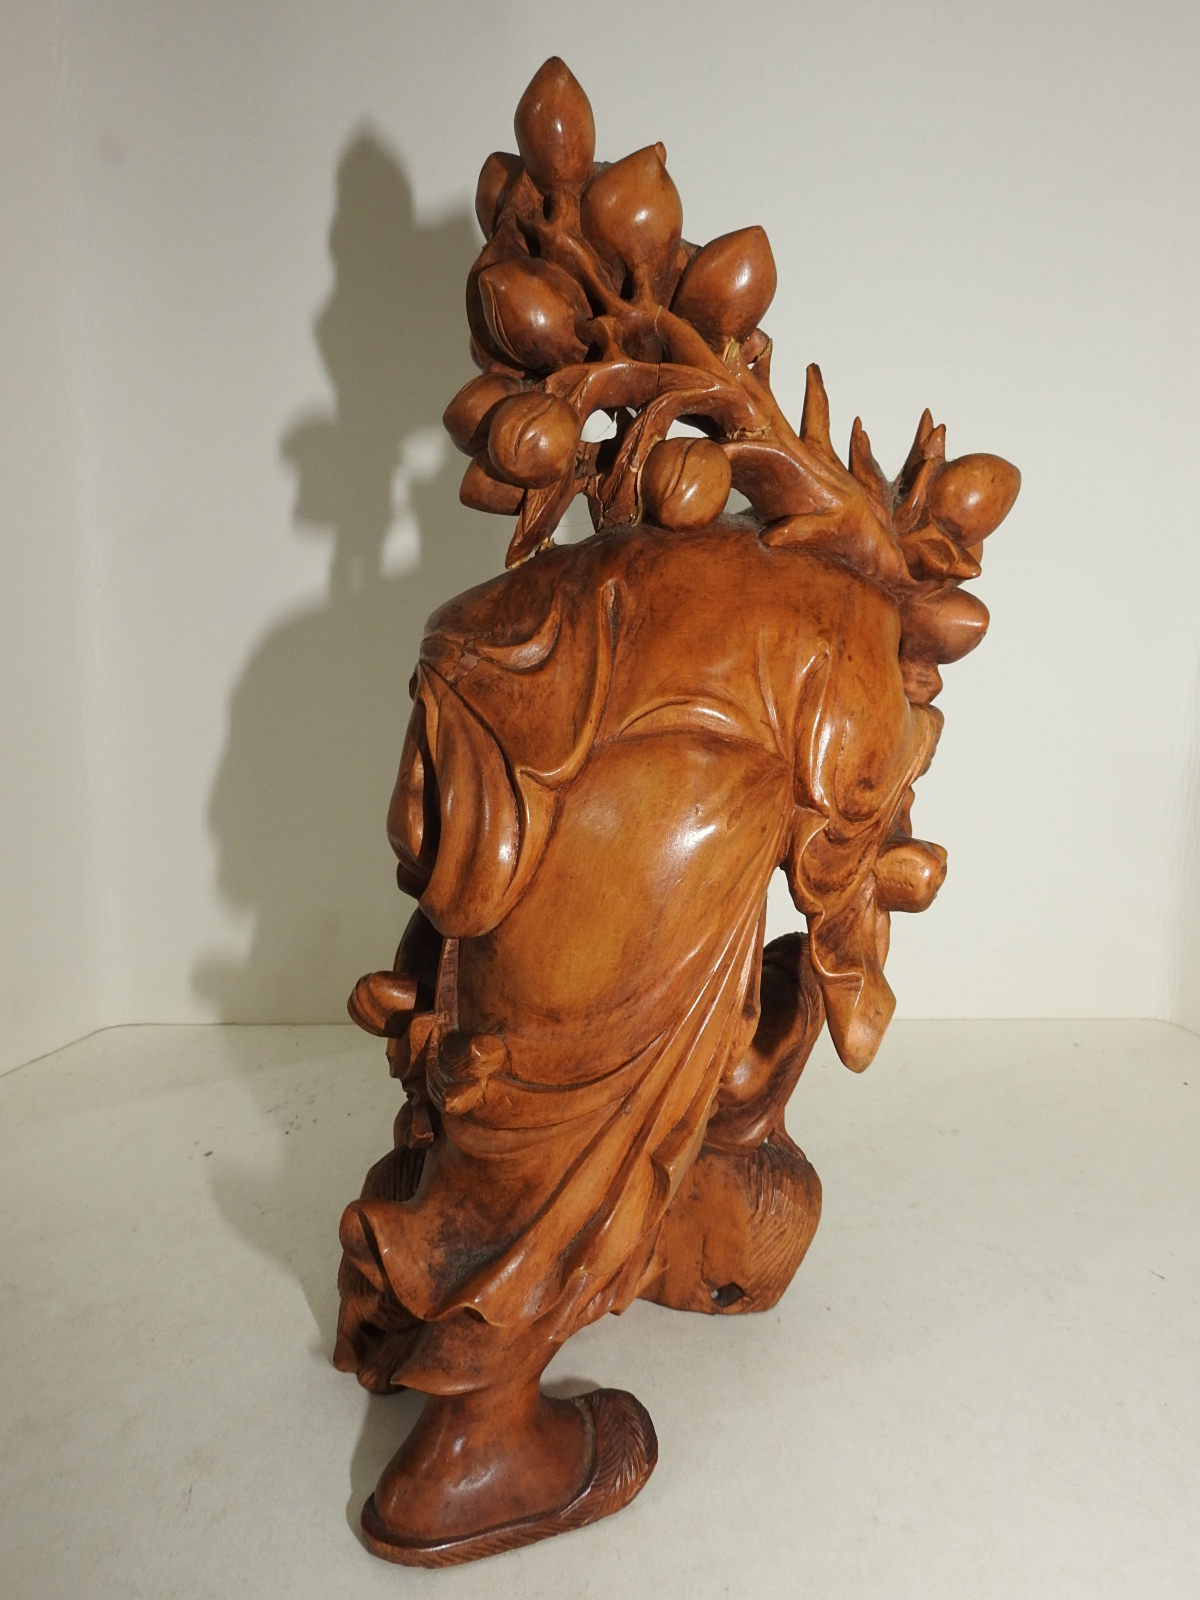 원목나무로된 원숭이가 조각된 도인 조각상